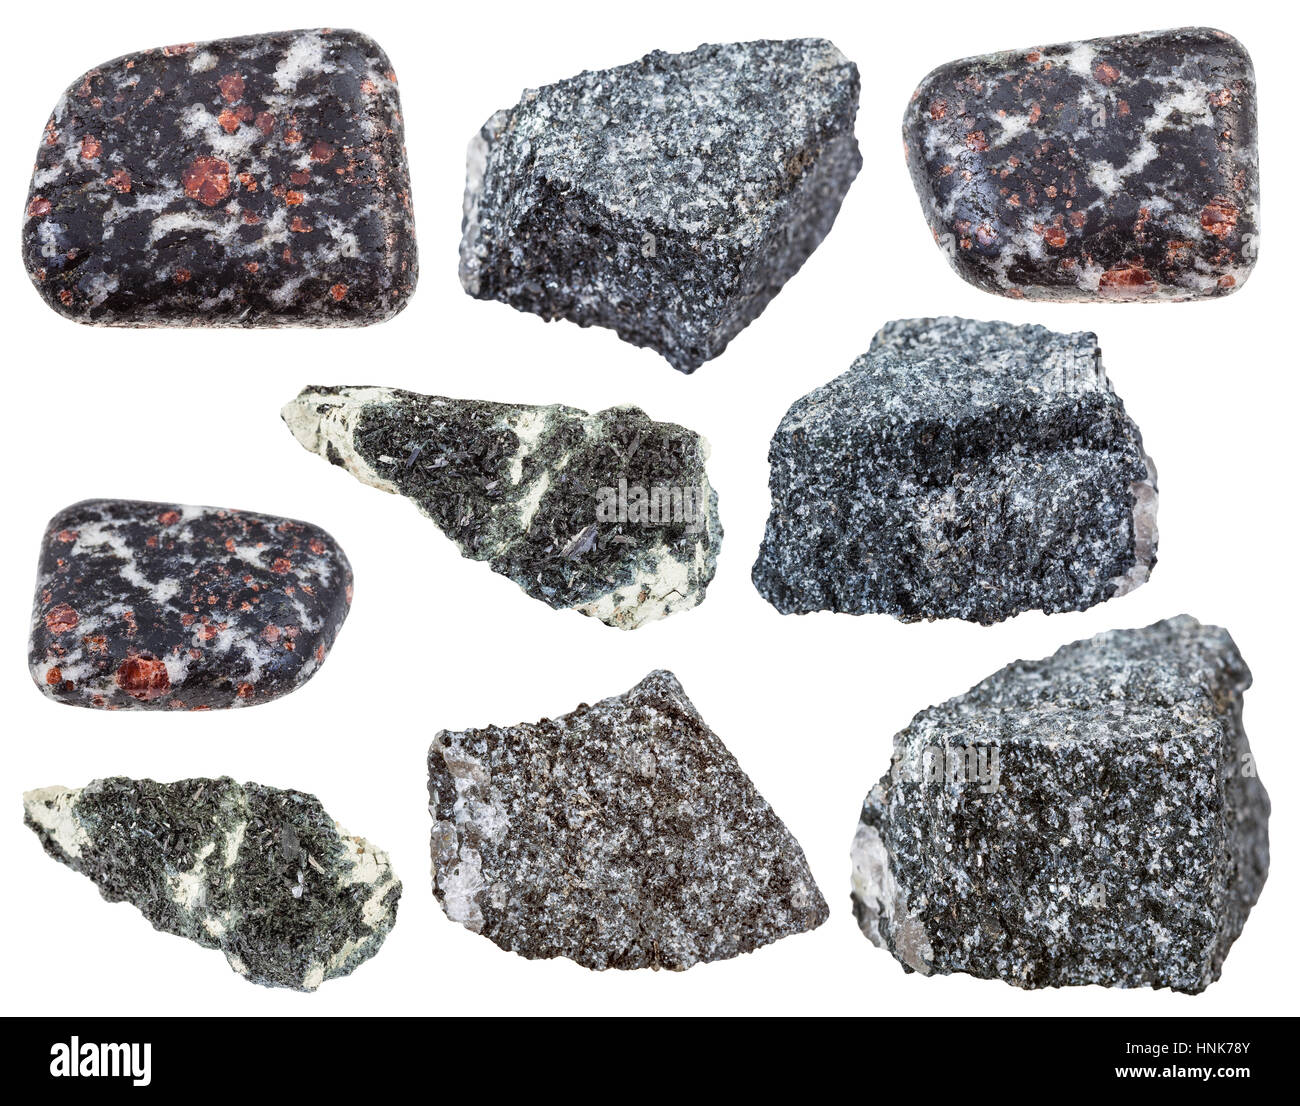 Sammlung von verschiedenen Hornblenden in Amphibol mineralischen Steinen isoliert auf weißem Hintergrund Stockfoto